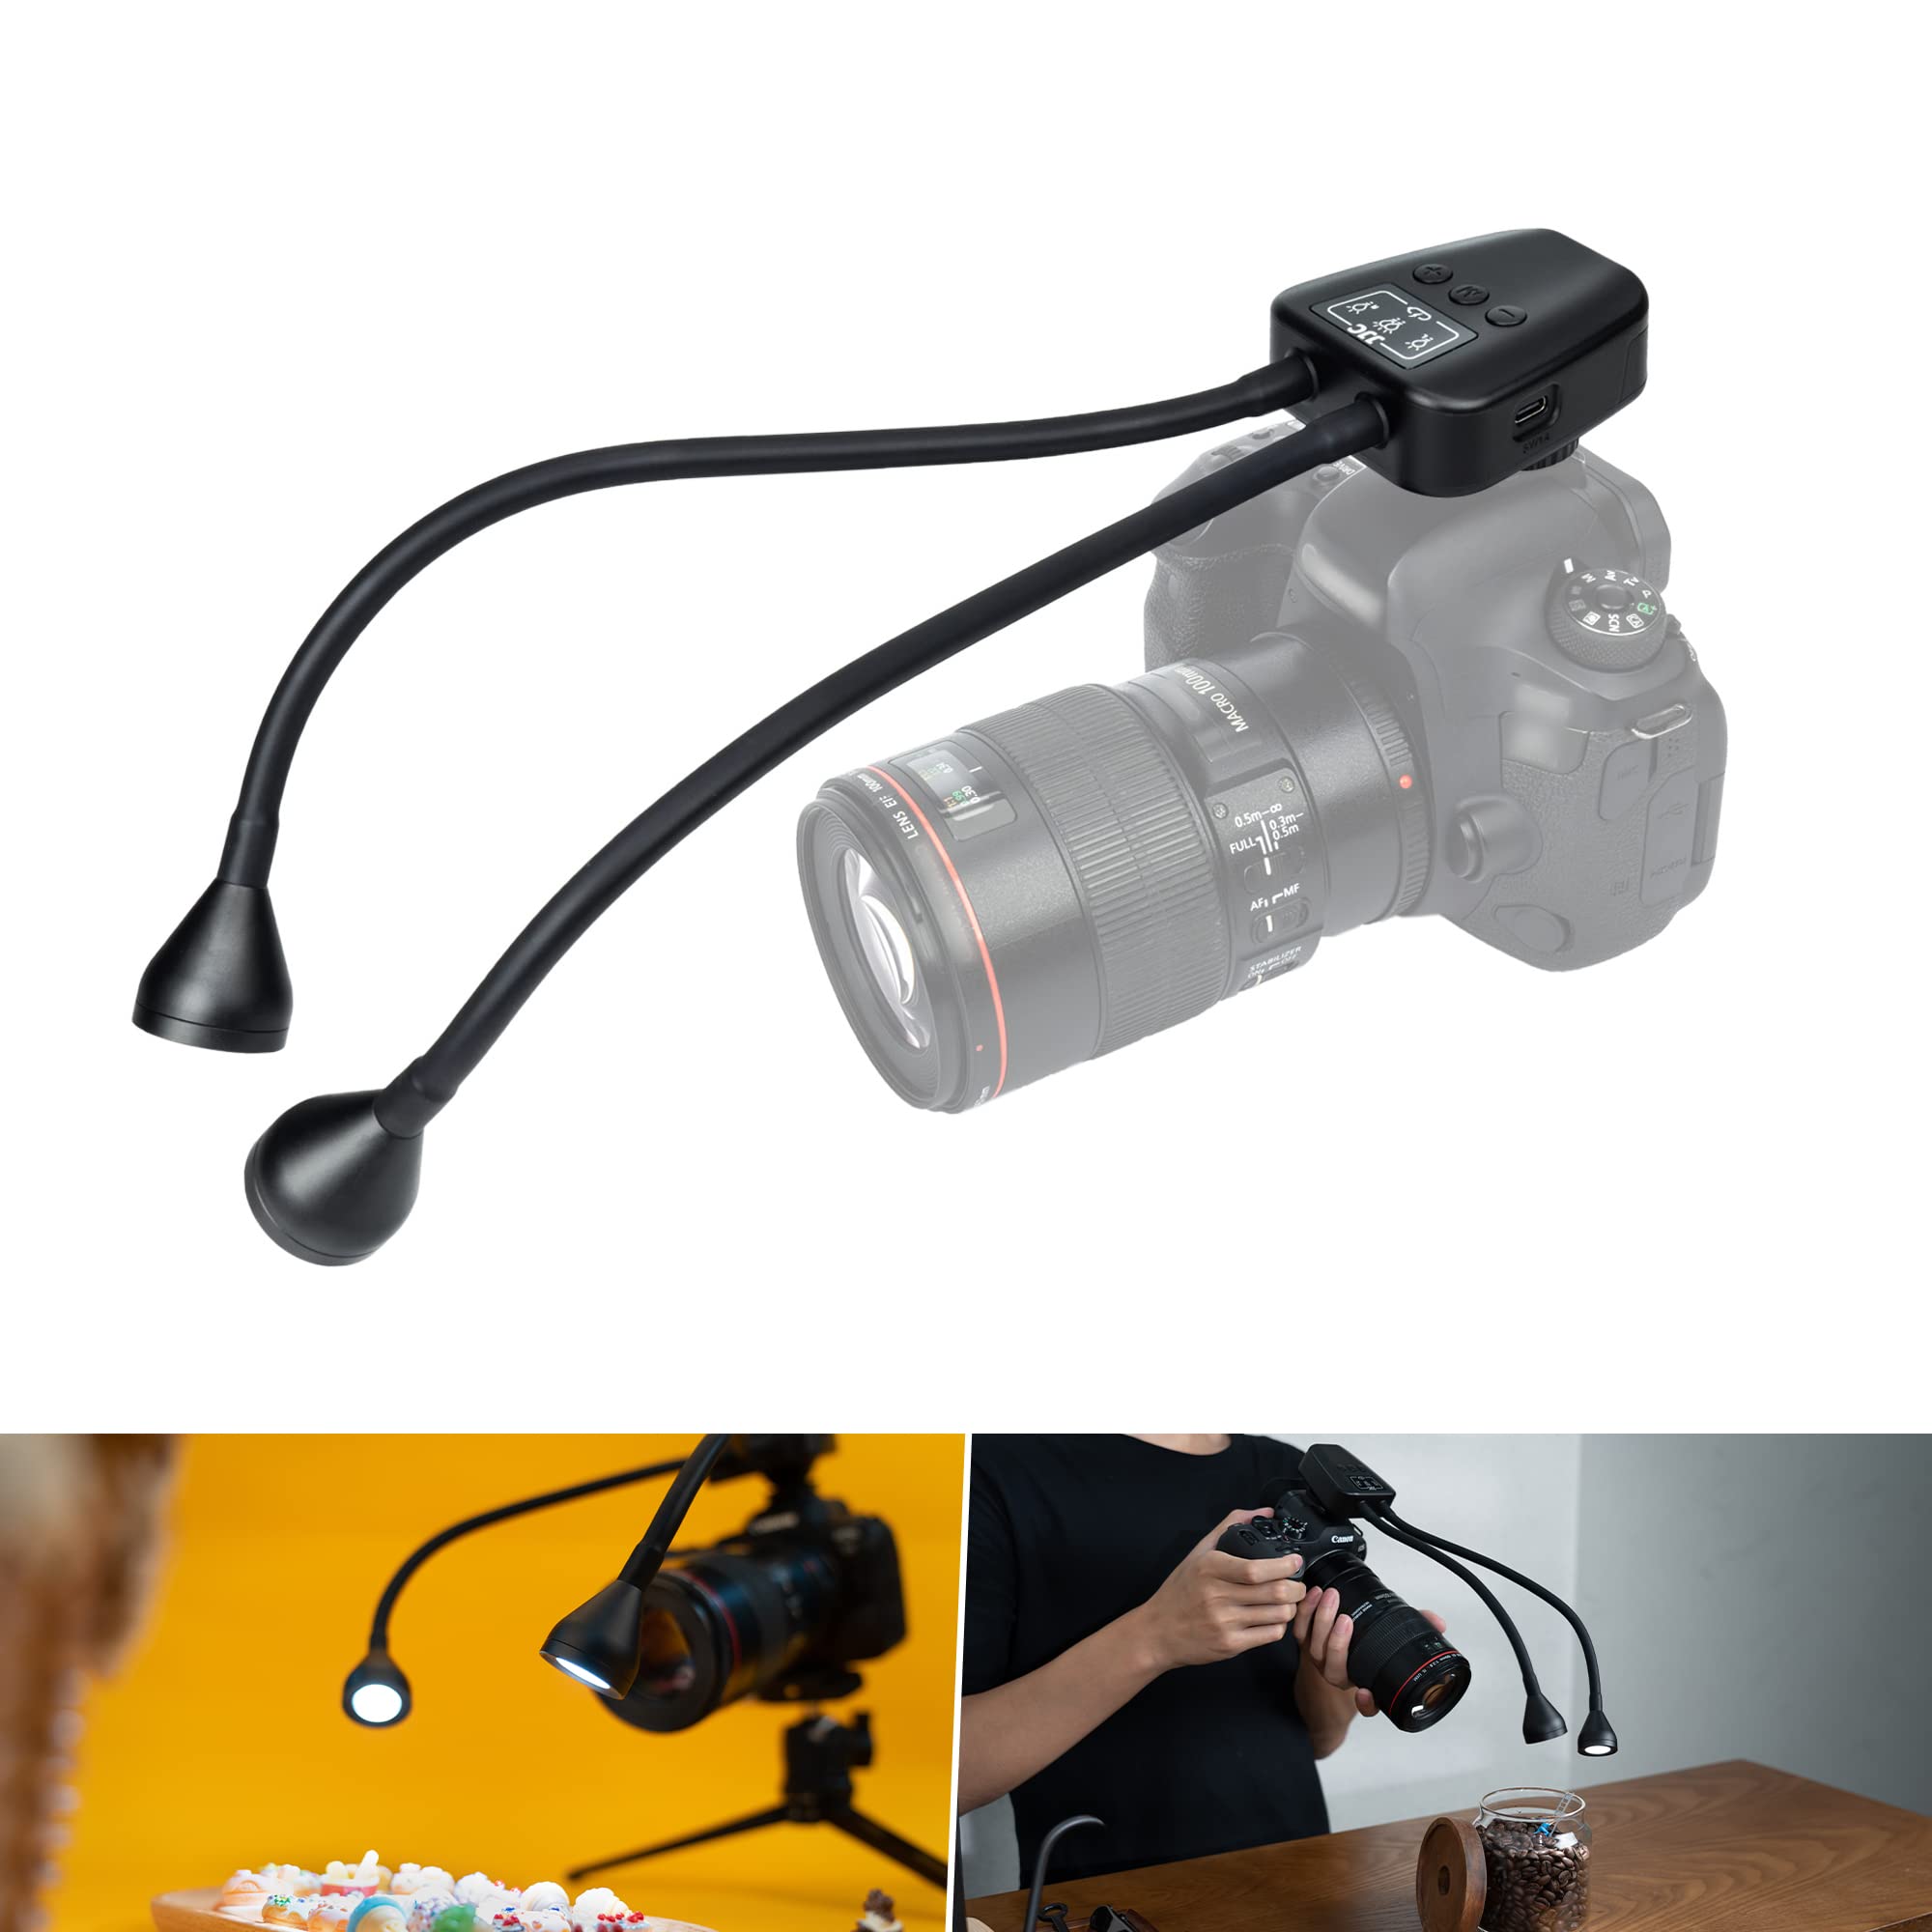 JJC ポータブル LED マクロアームライト小型 USB-C充電式 600mAh Type-C CRI 95+ 5600K フォト照明 10段階調節 調節可能なフレキシブルアーム LEDカメラライト コールドシューホルダーに取り付け マクロライト カメラ